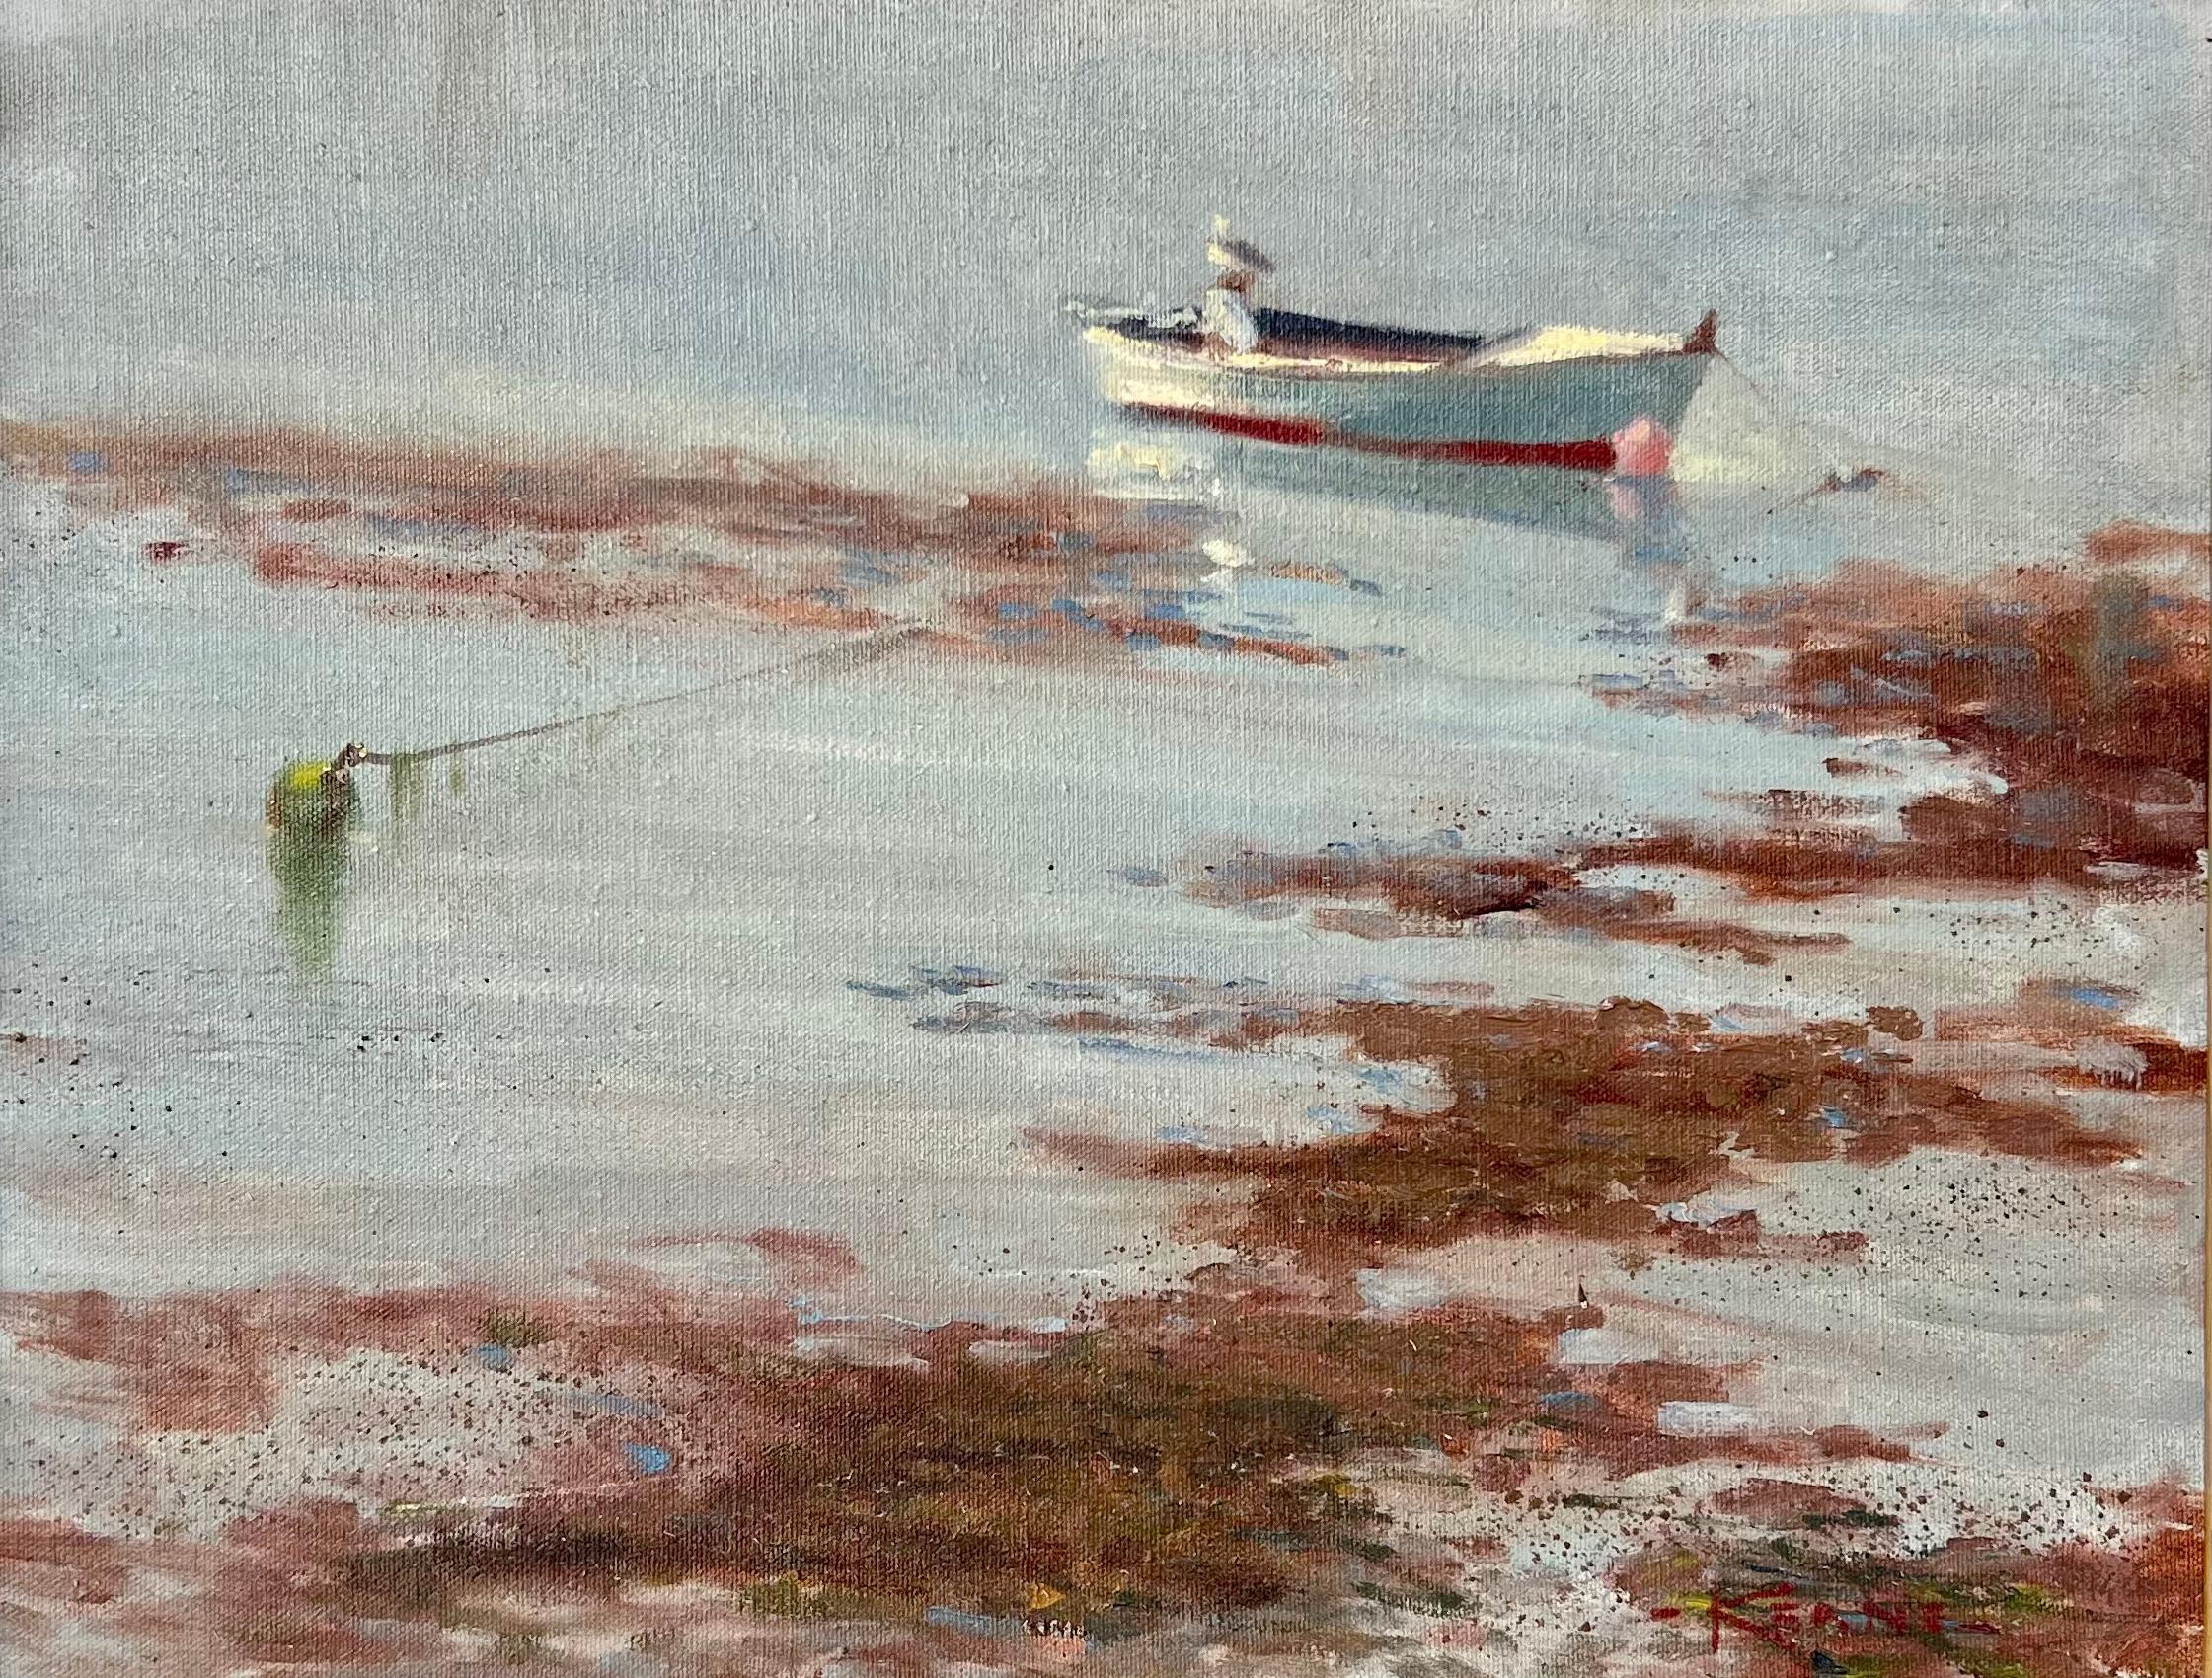 Michael Keane (b.1948 - 2015), huile sur toile signée en bas à droite représentant un bateau à l'ancre dans un port.

En raison de la beauté intemporelle de ses œuvres, Michael Keane est l'un des artistes marins les plus recherchés au monde